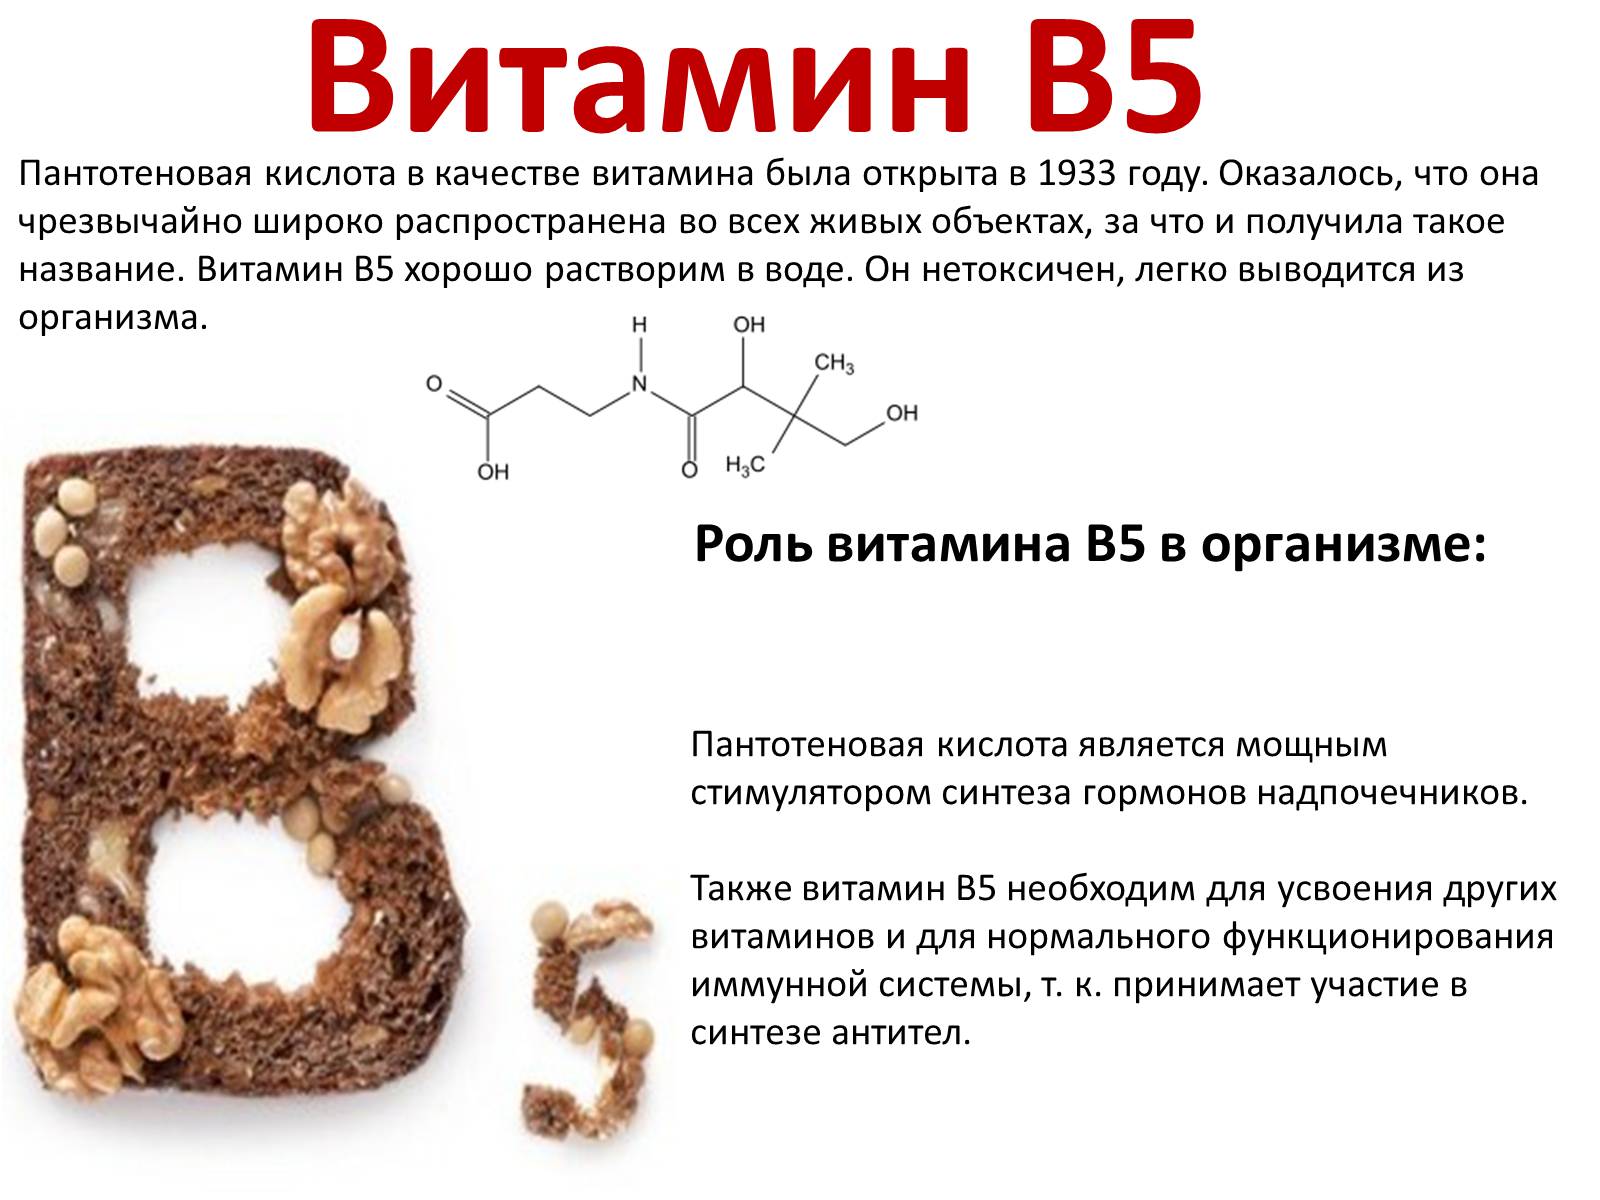 Витамин б характеристика. Витамин б5 пантотеновая кислота. Витамин в5 пантотеновая кислота функции. Витамин в5 или пантотеновая кислота. Роль в организме витамина b5.